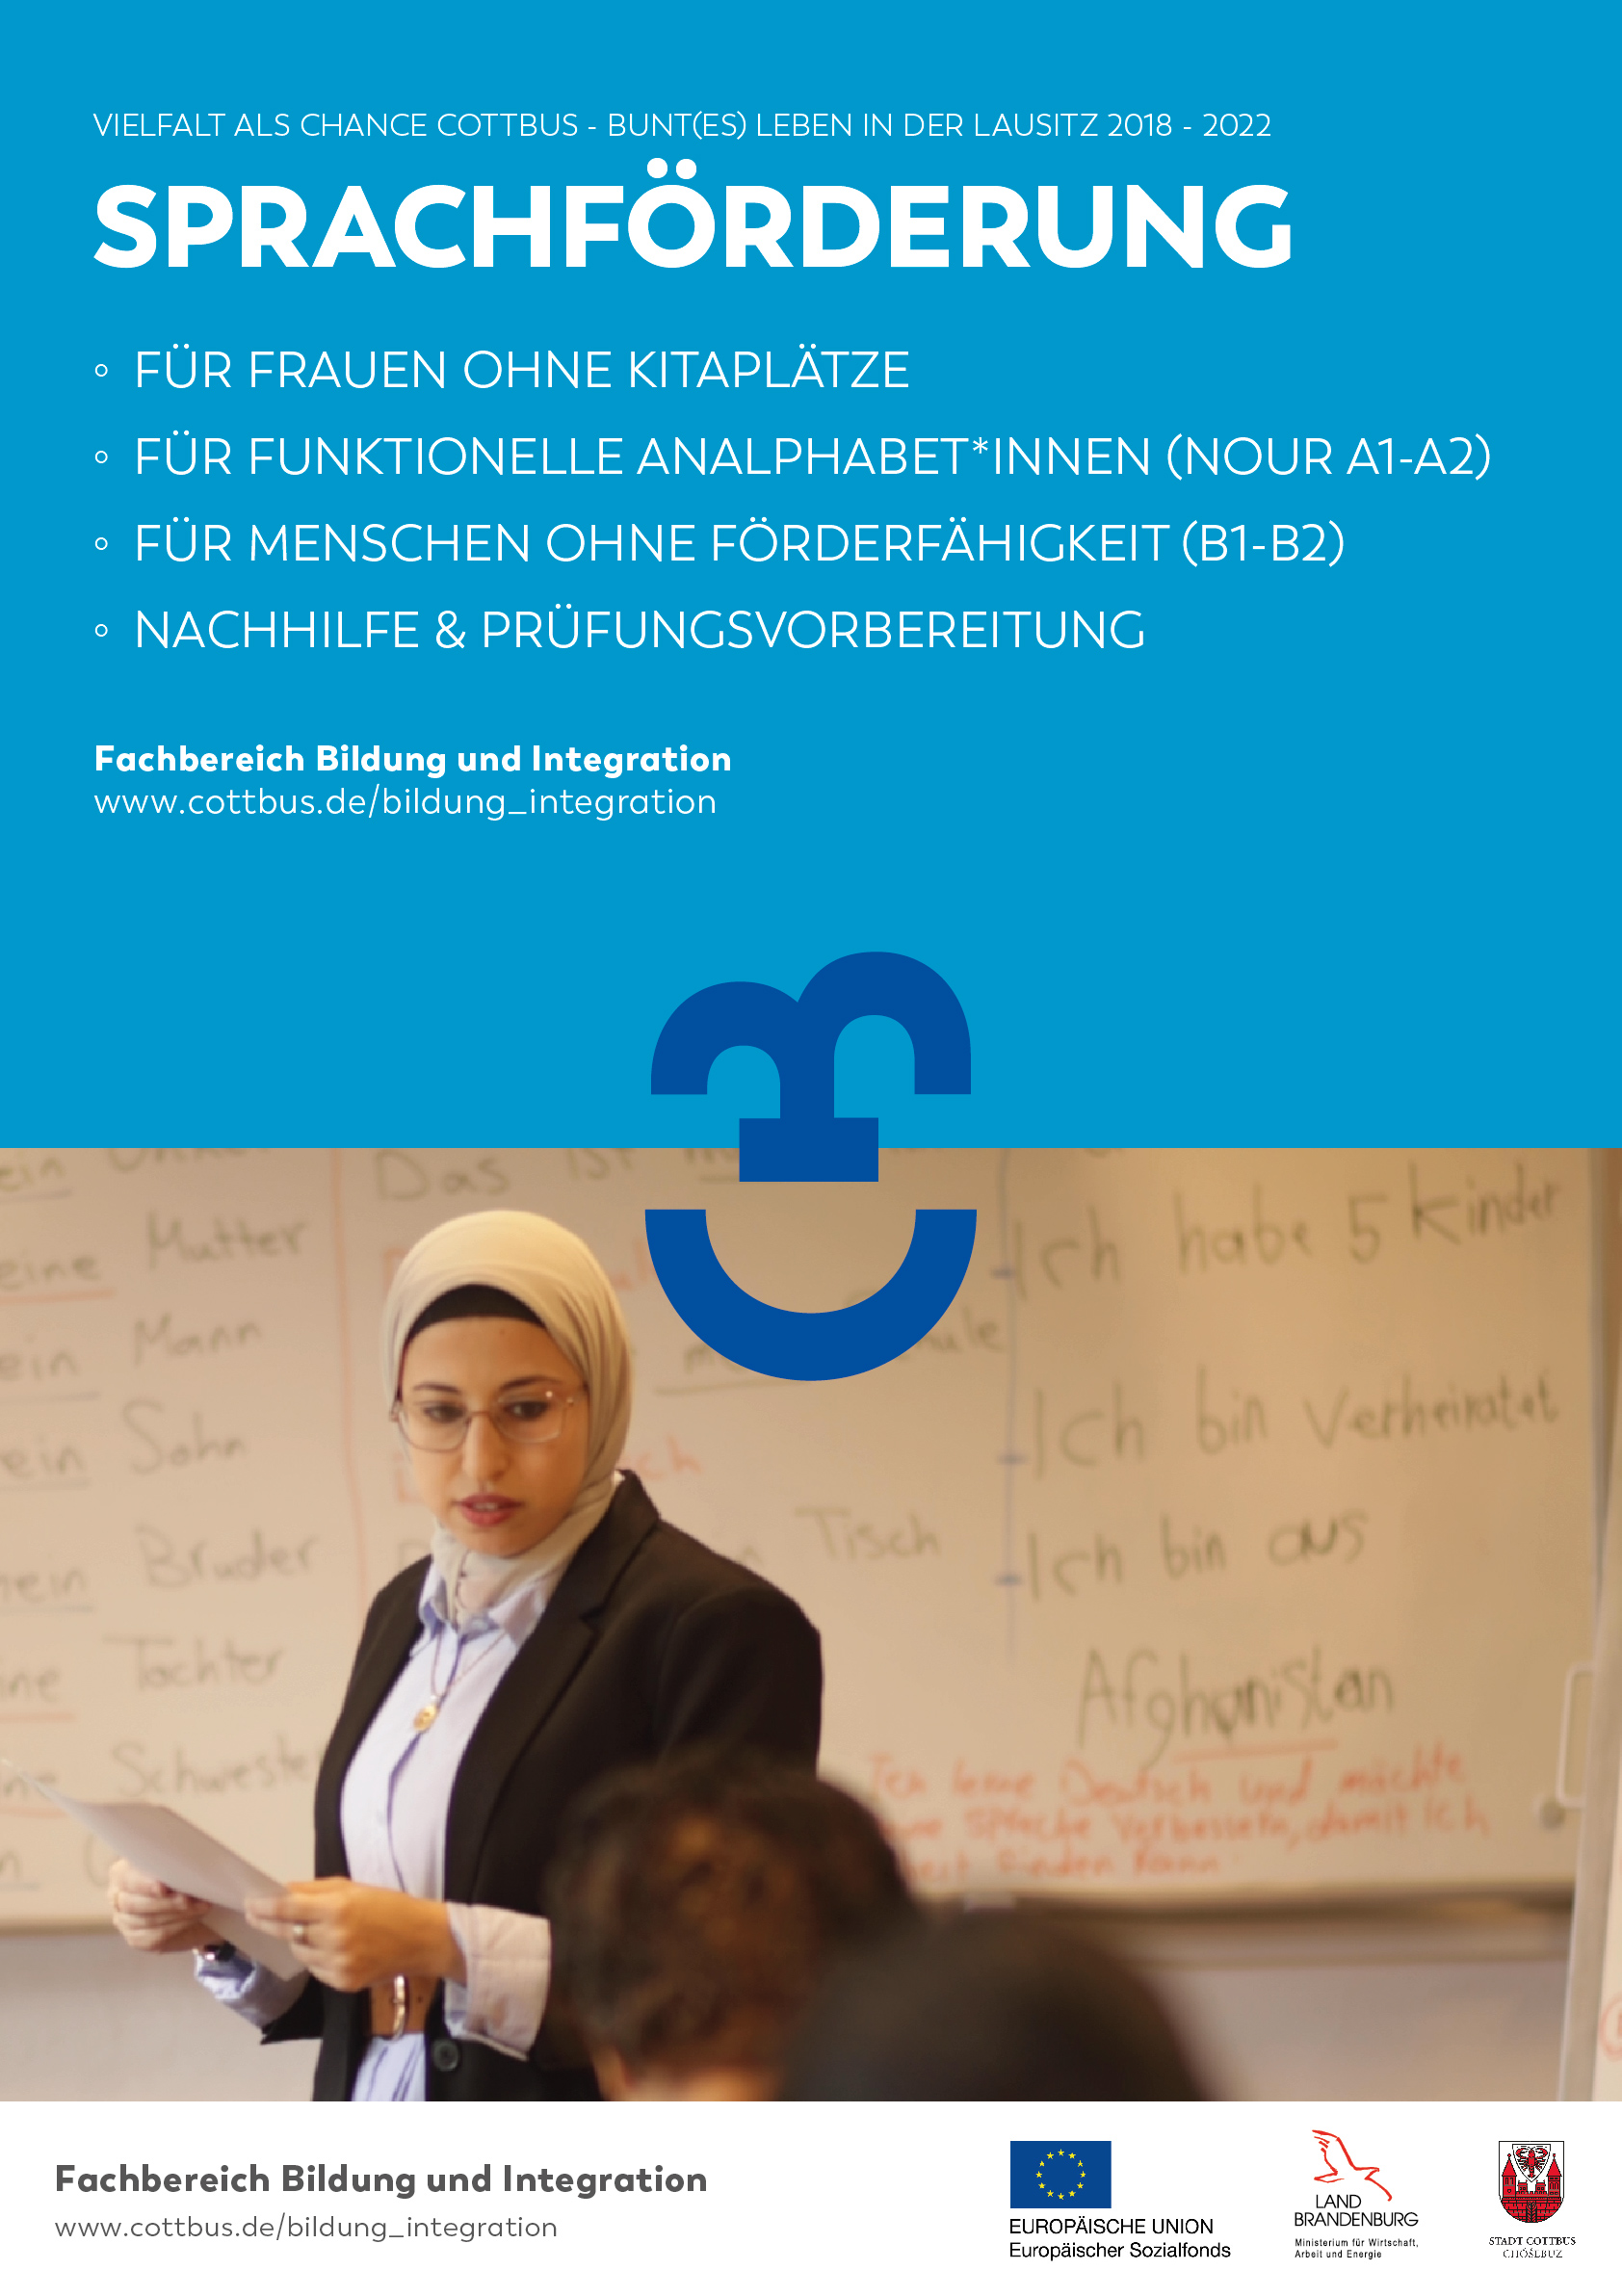 Plakat zeigt eine Dozentin vor einer beschriebenen Tafel. Auf einer blau unterlegten Fläche darüber sind die Angebote zusammengefasst, die das SUW-Projekt Cottbus hinsichtlich Sprachförderung bietet.